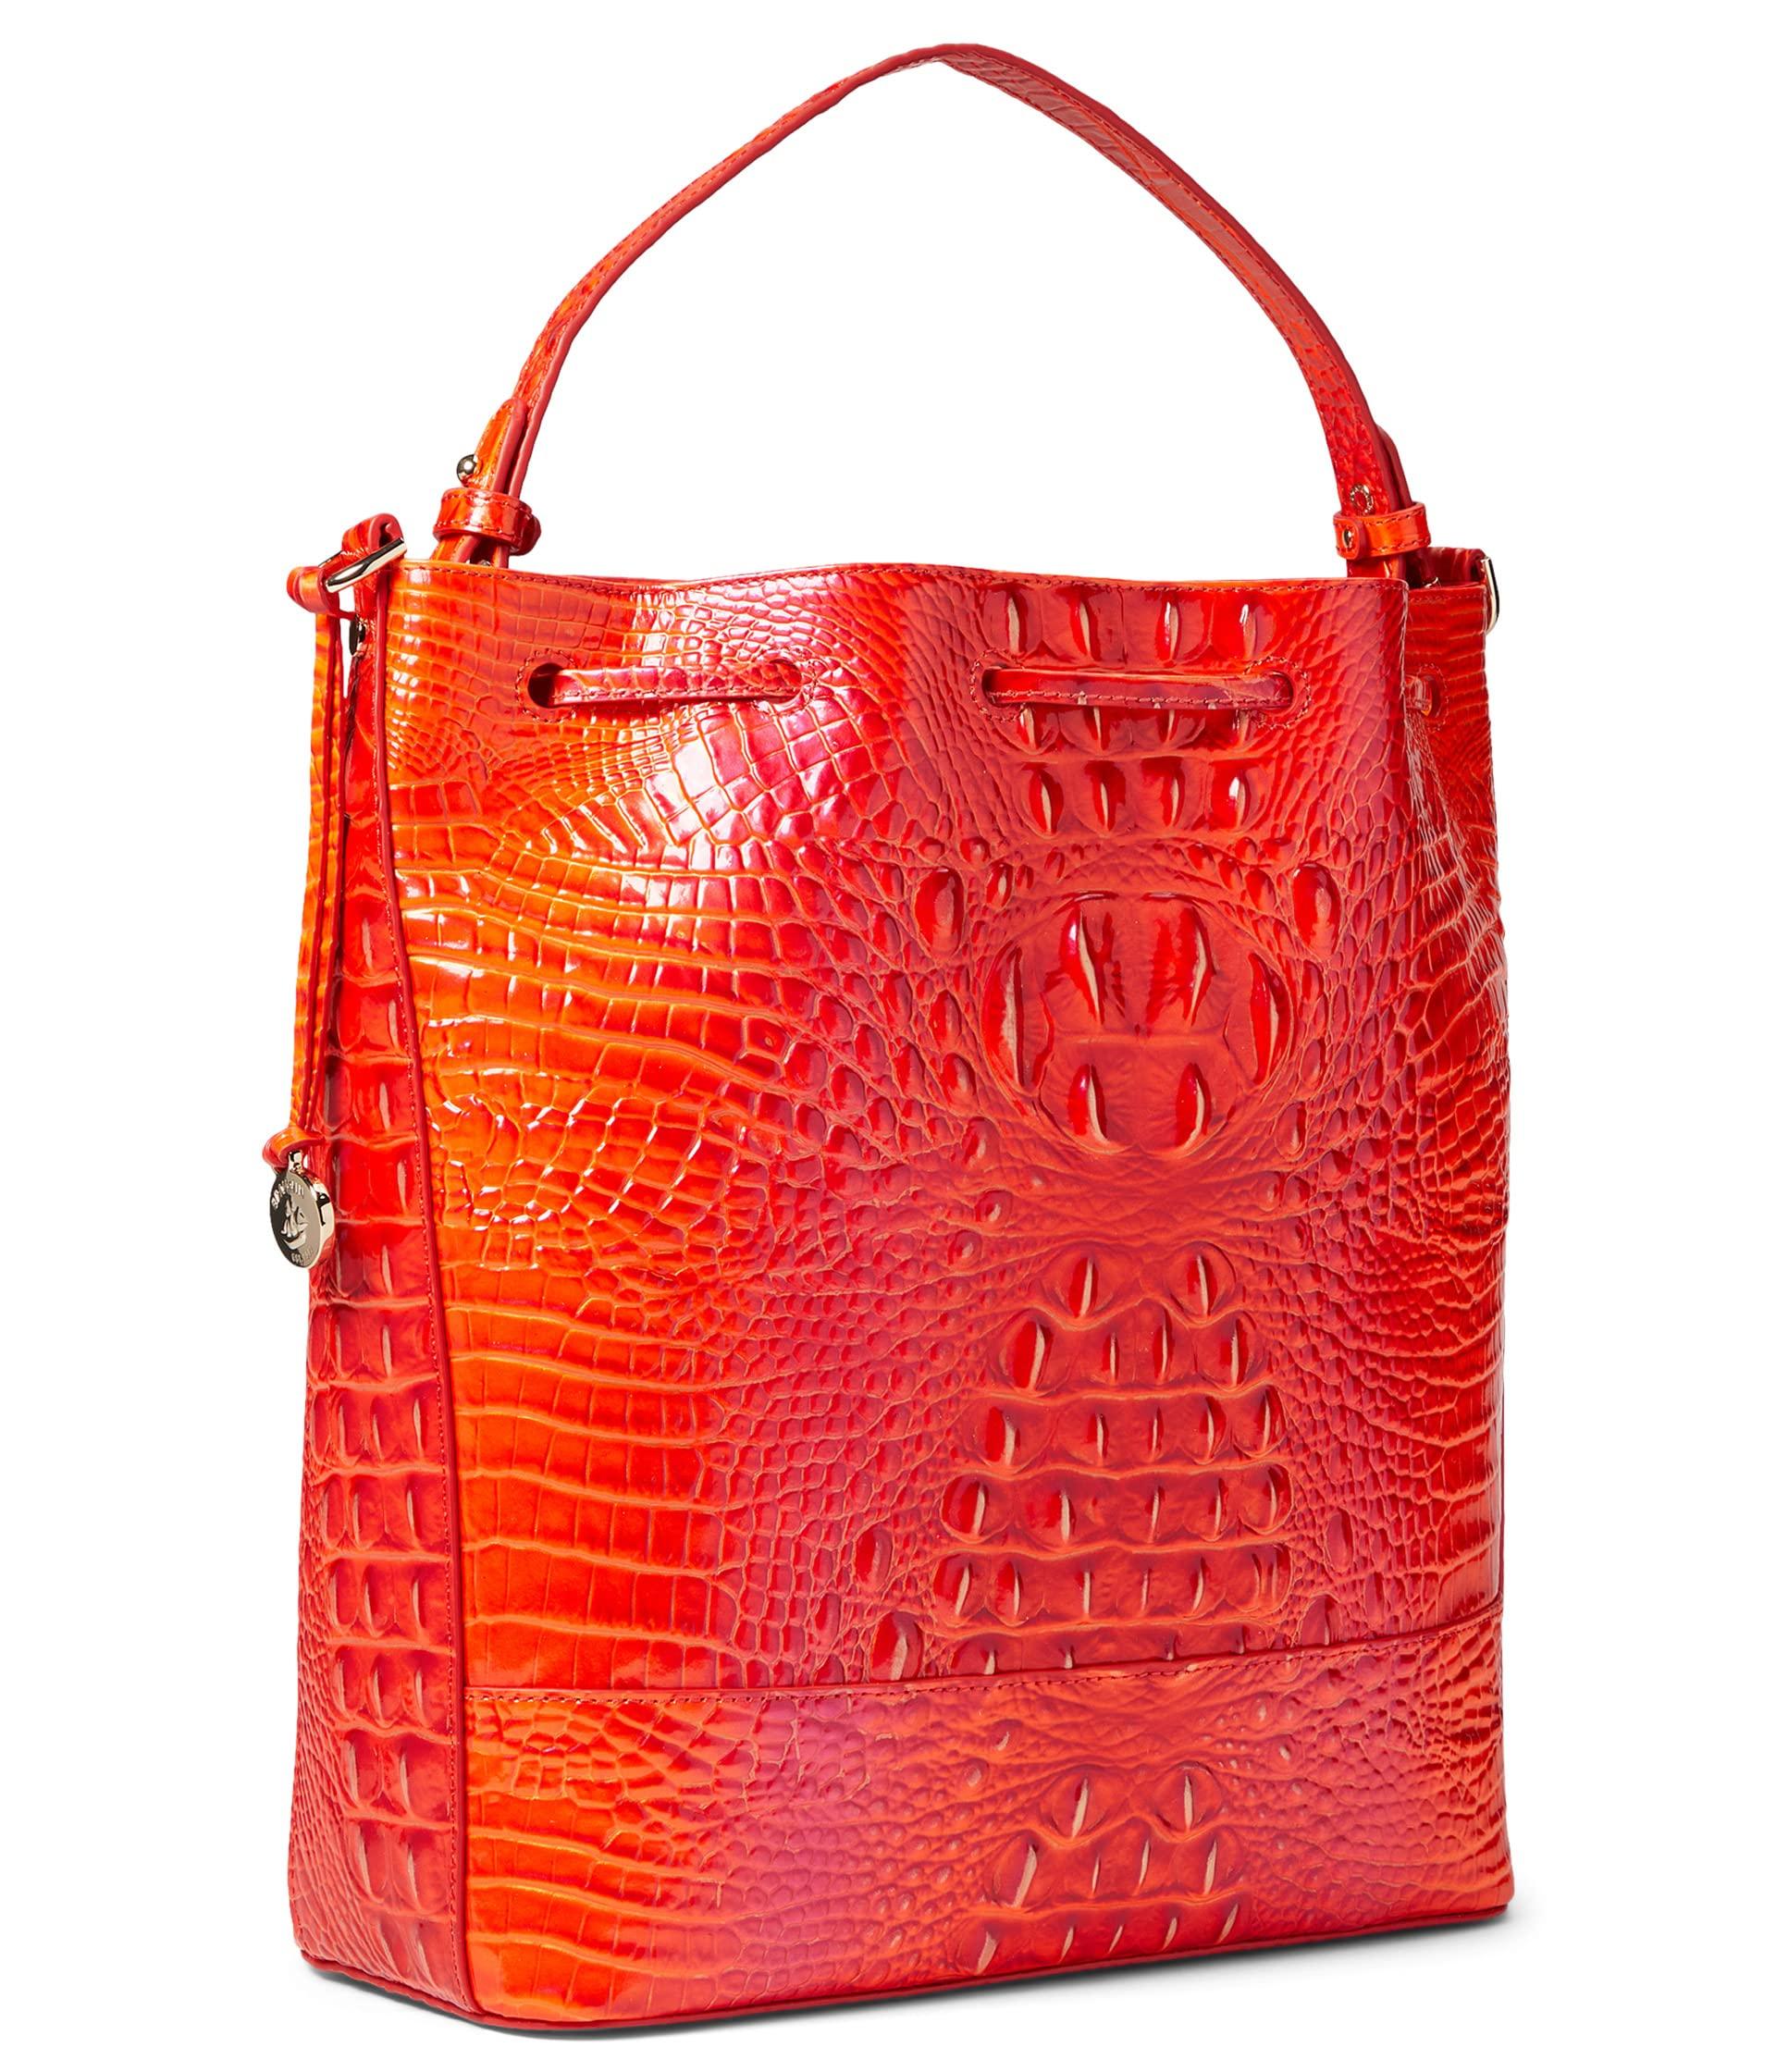 Brahmin Marlowe Fanciful Bucket Bag